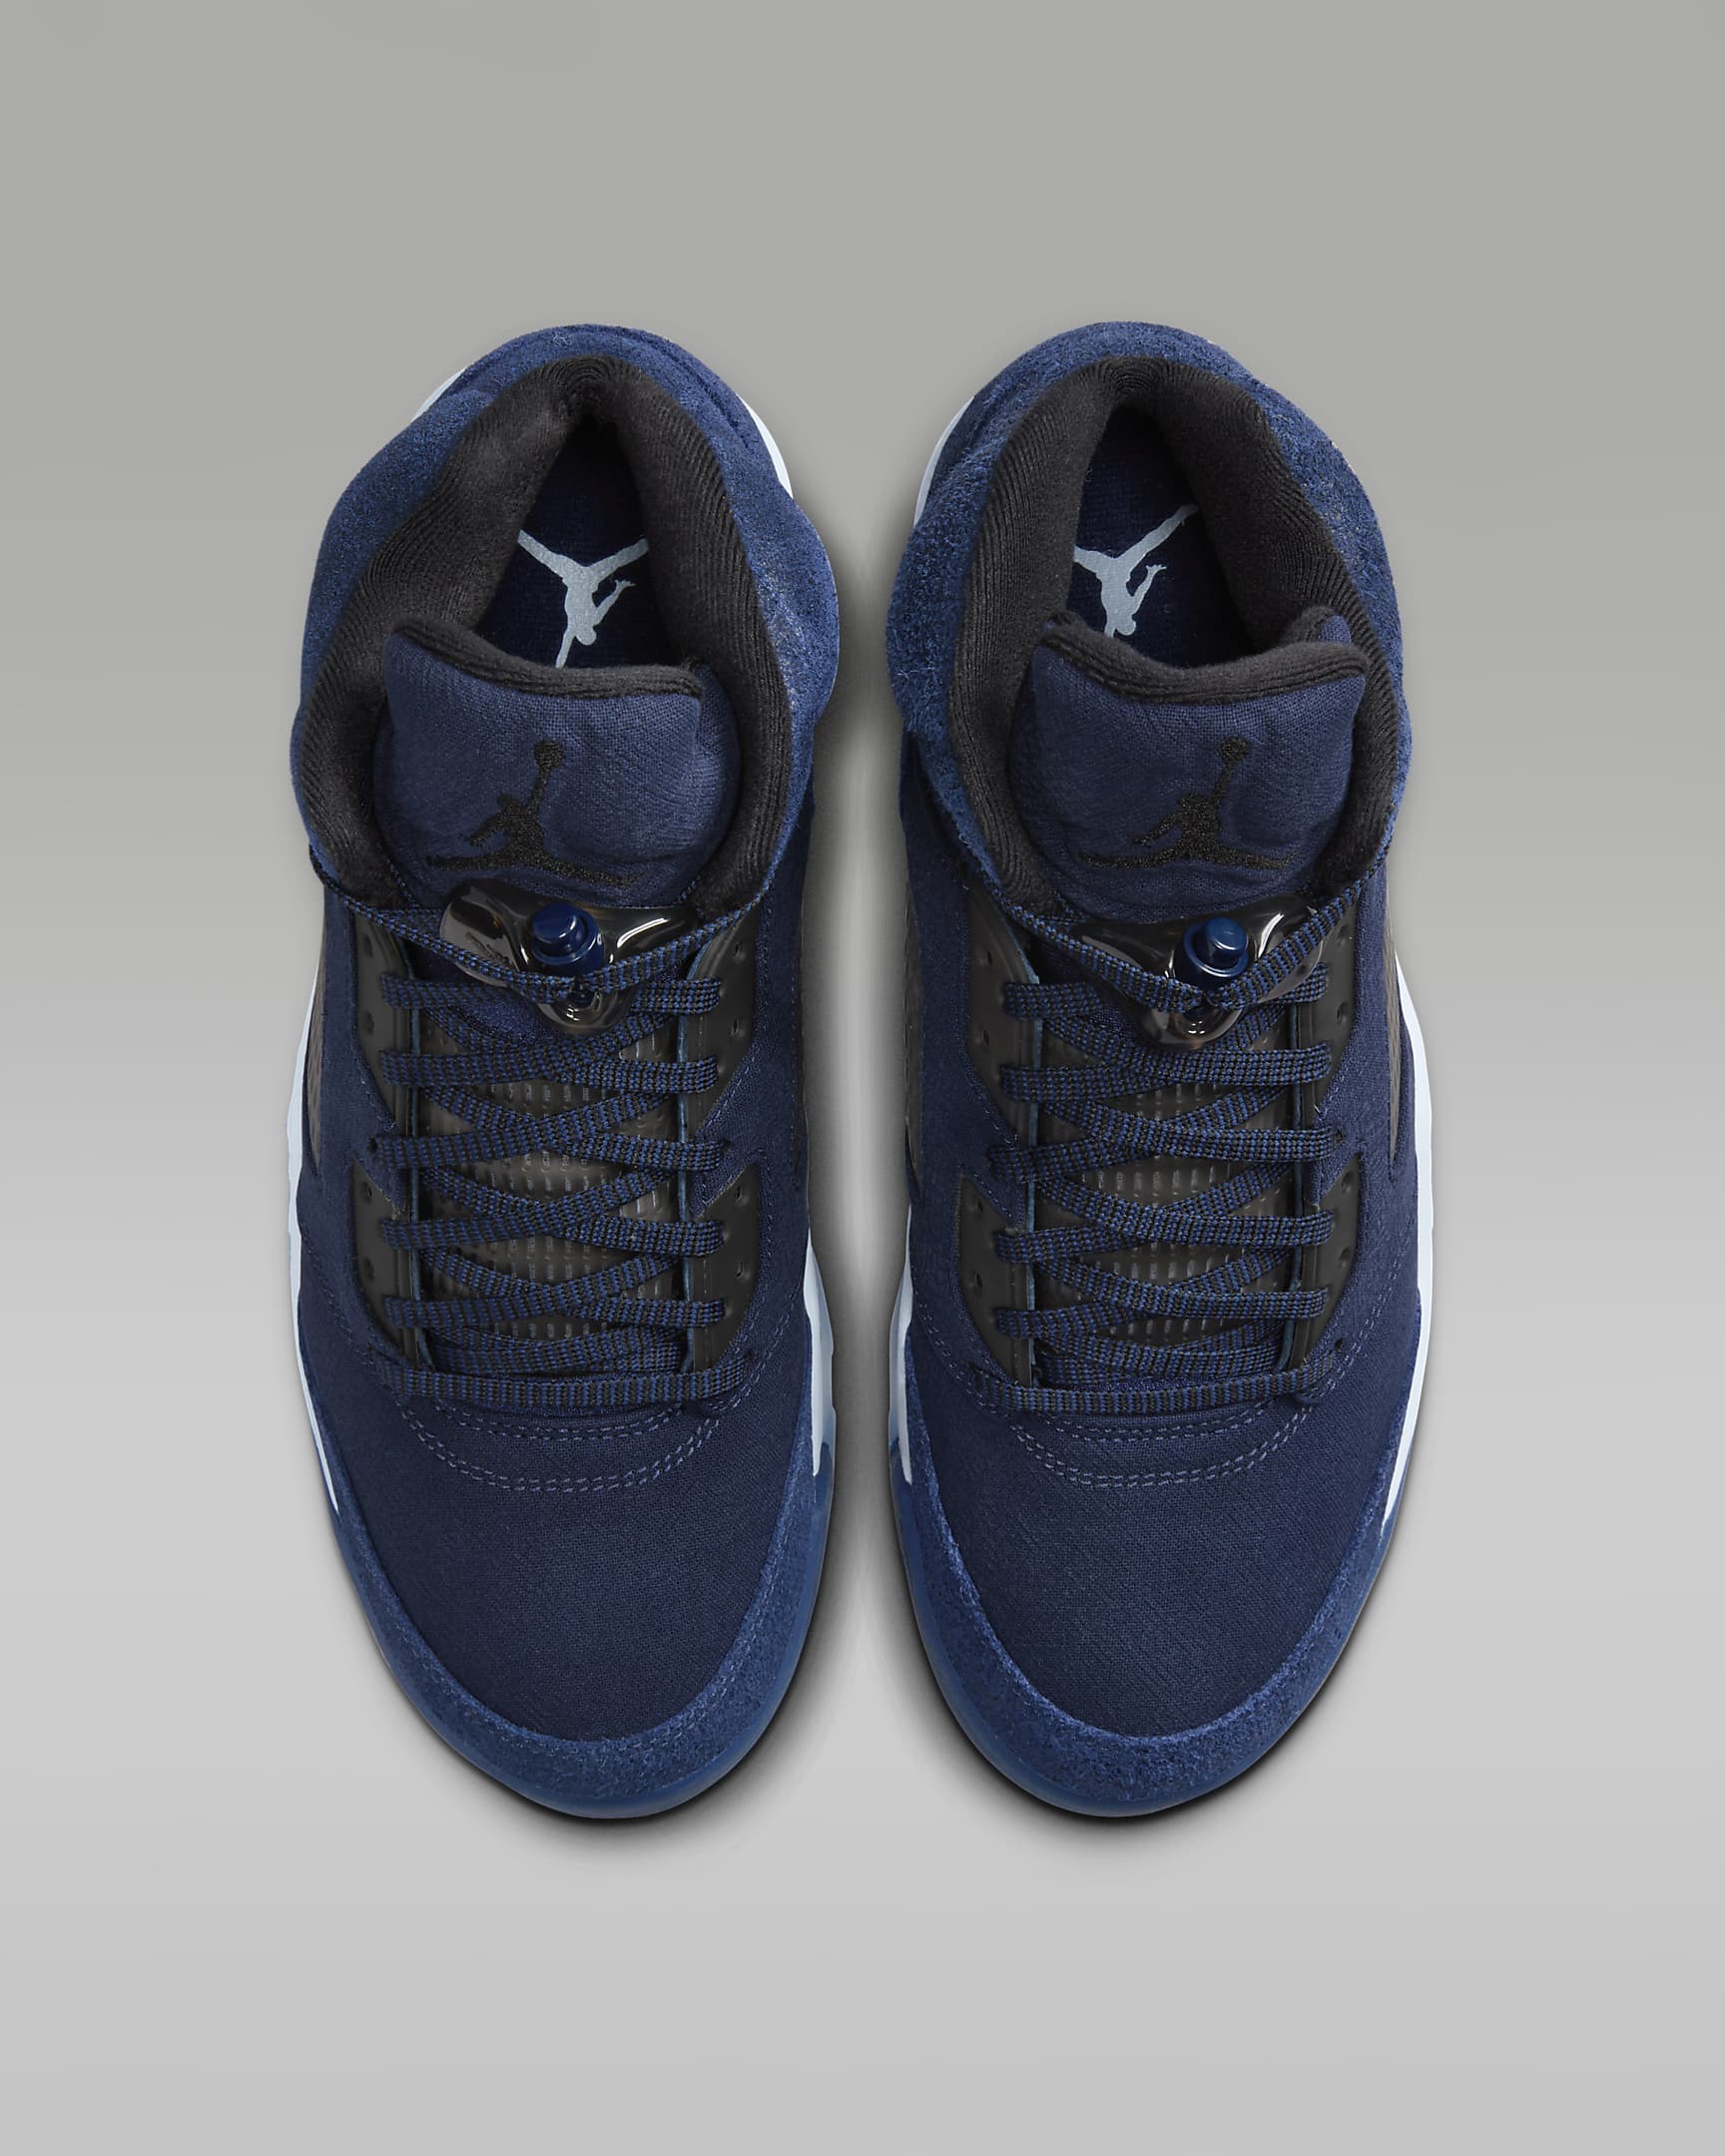 Air Jordan Retro 5 SE Men’s Shoes Review: Unveiling the Hype!